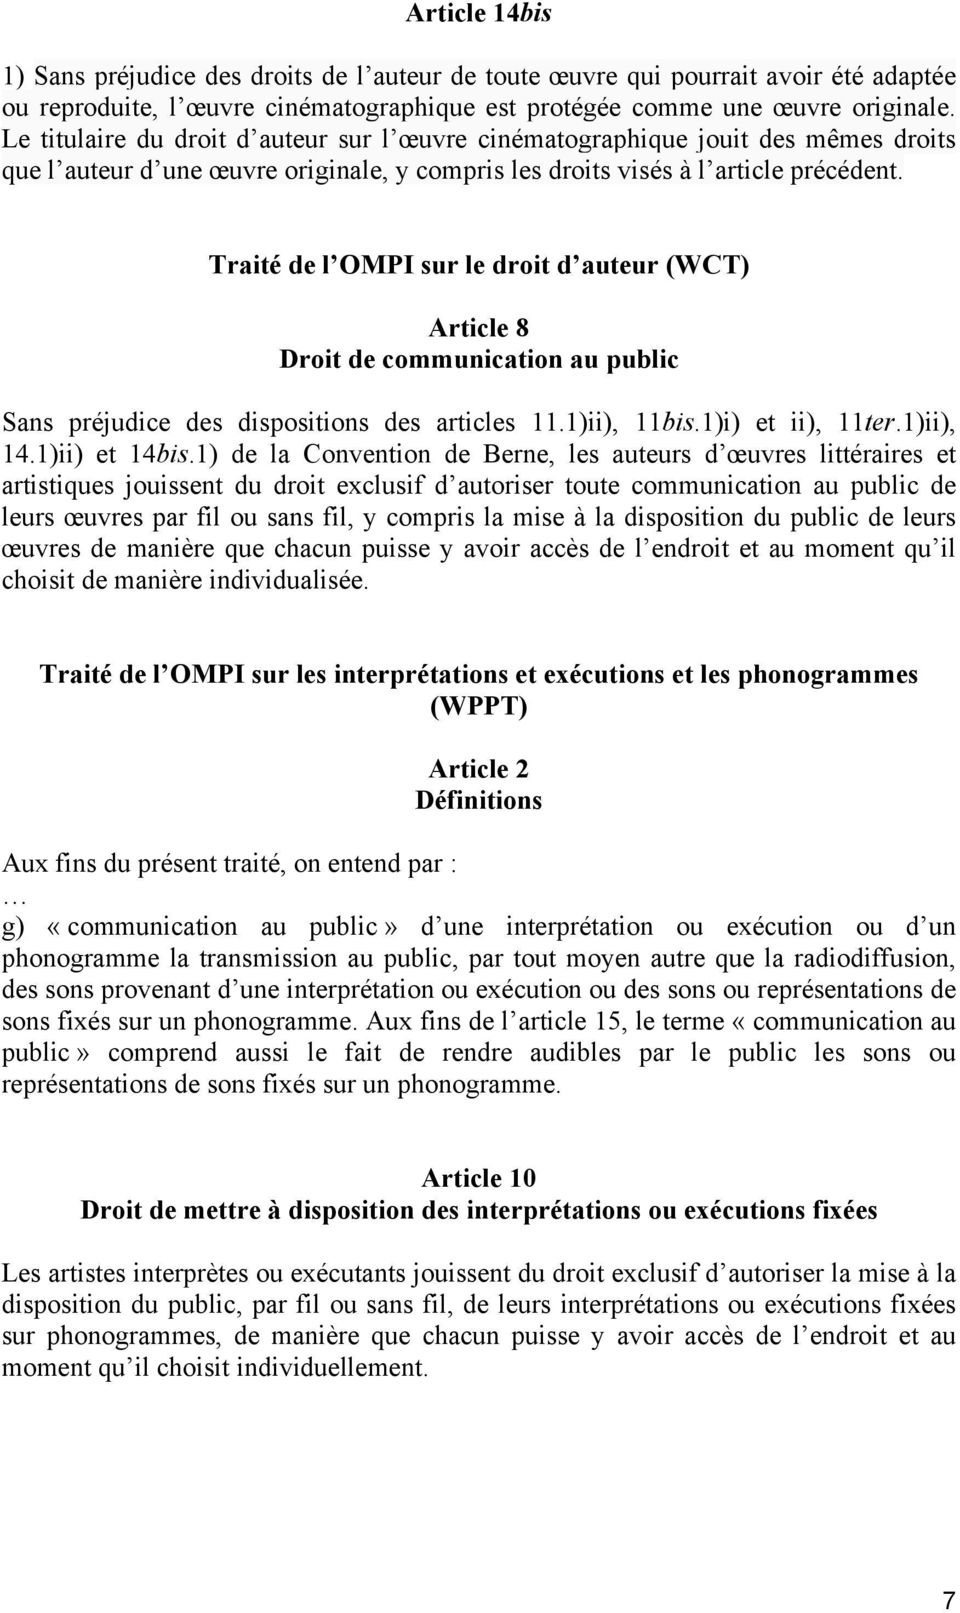 Traité de l OMPI sur le droit d auteur (WCT) Article 8 Droit de communication au public Sans préjudice des dispositions des articles 11.1)ii), 11bis.1)i) et ii), 11ter.1)ii), 14.1)ii) et 14bis.